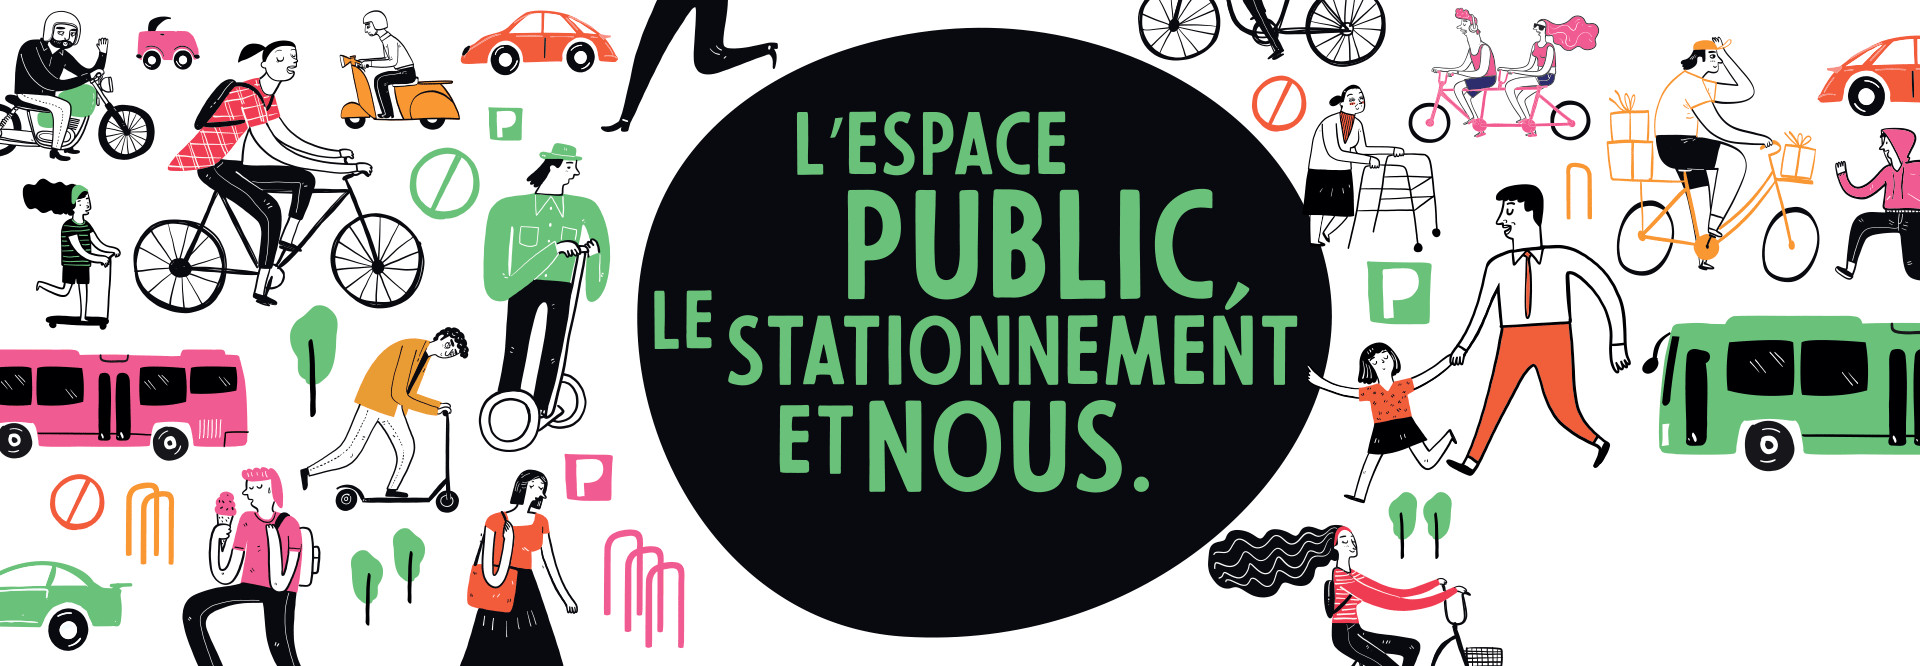 L’espace public, le stationnement et nous